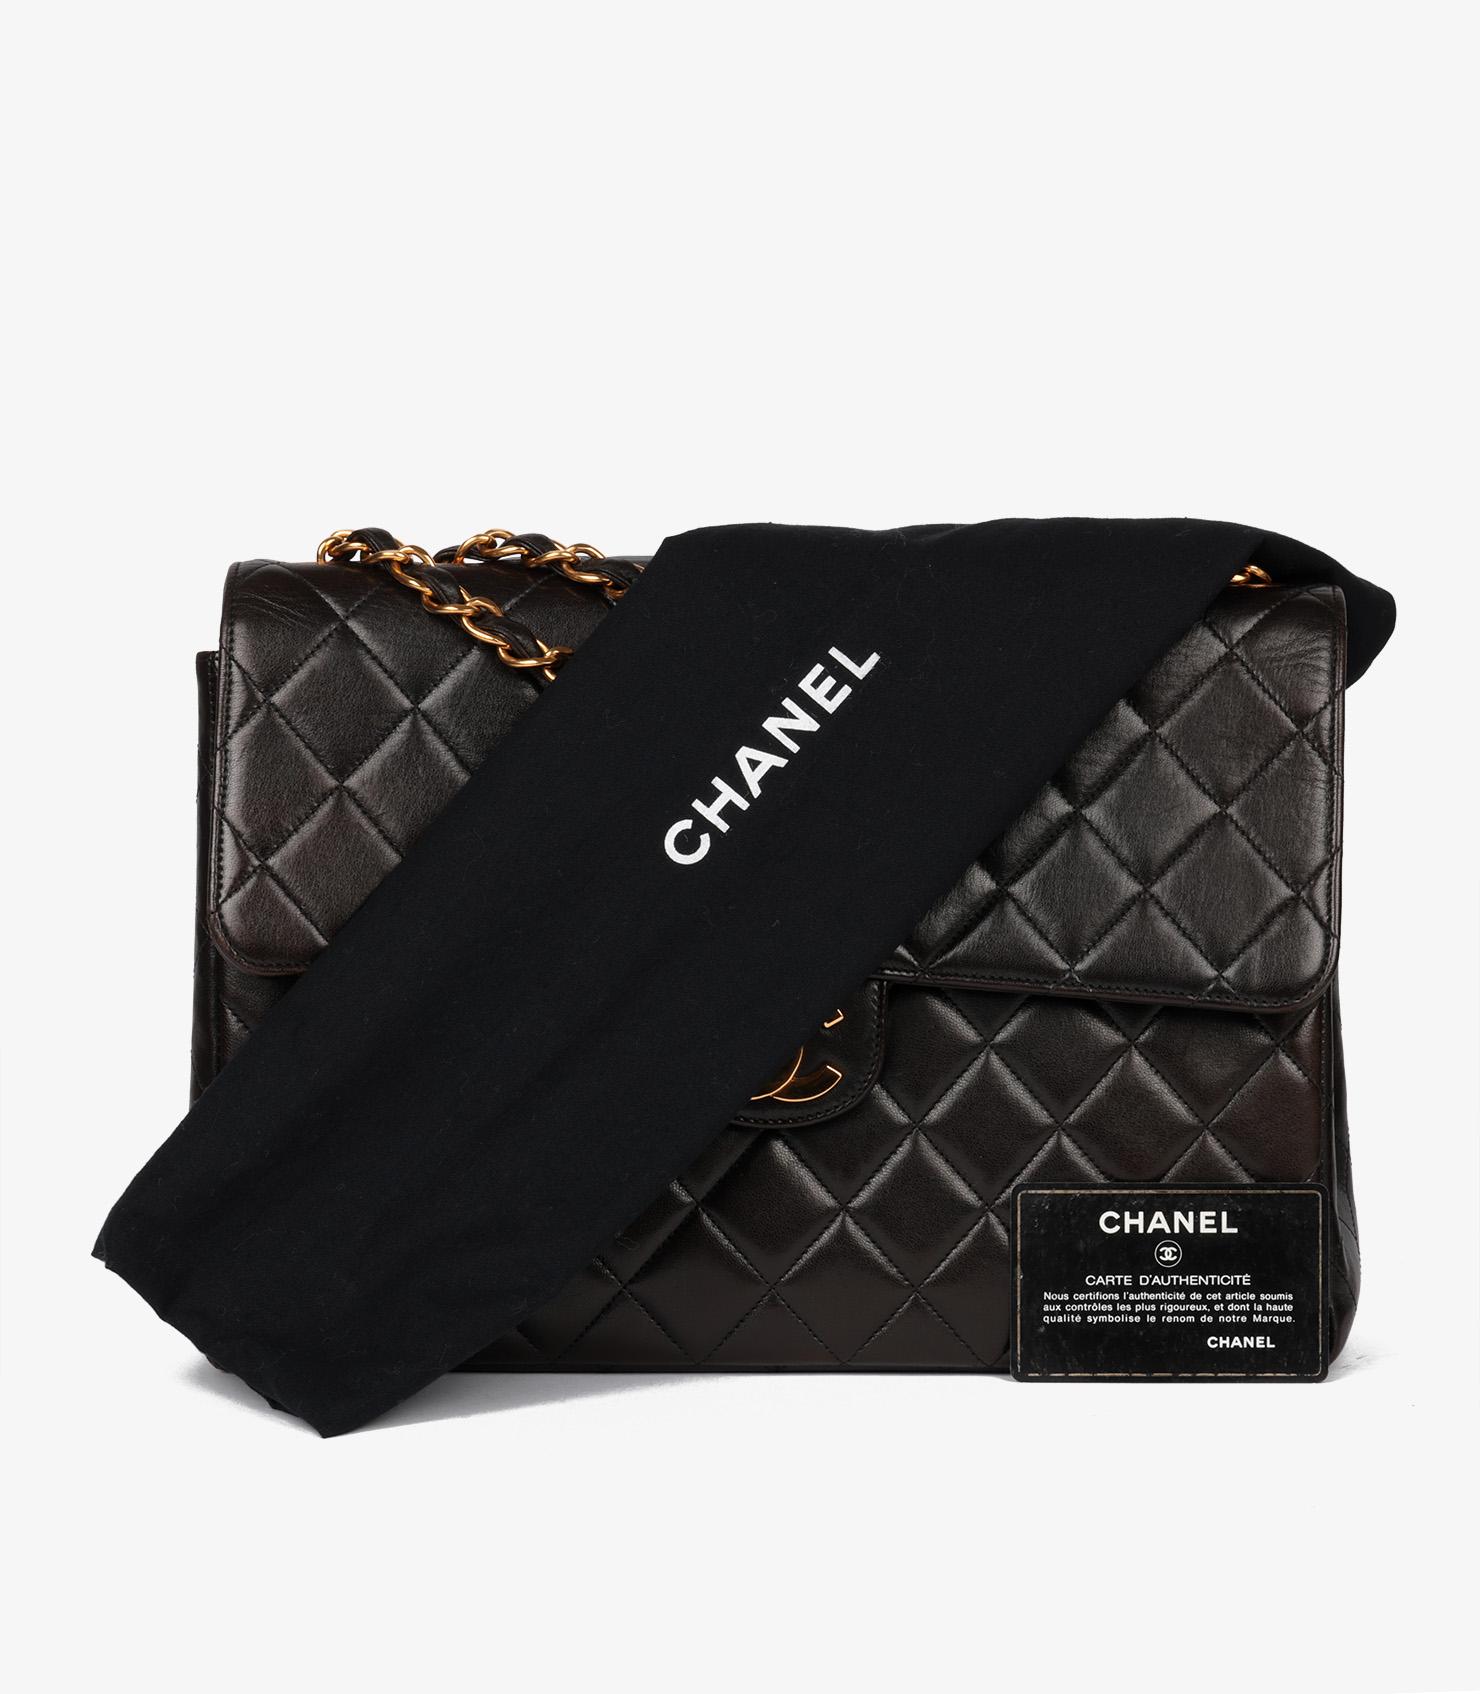 Chanel - Sac classique à rabat unique en cuir d'agneau matelassé - Vintage Jumbo - noir 8